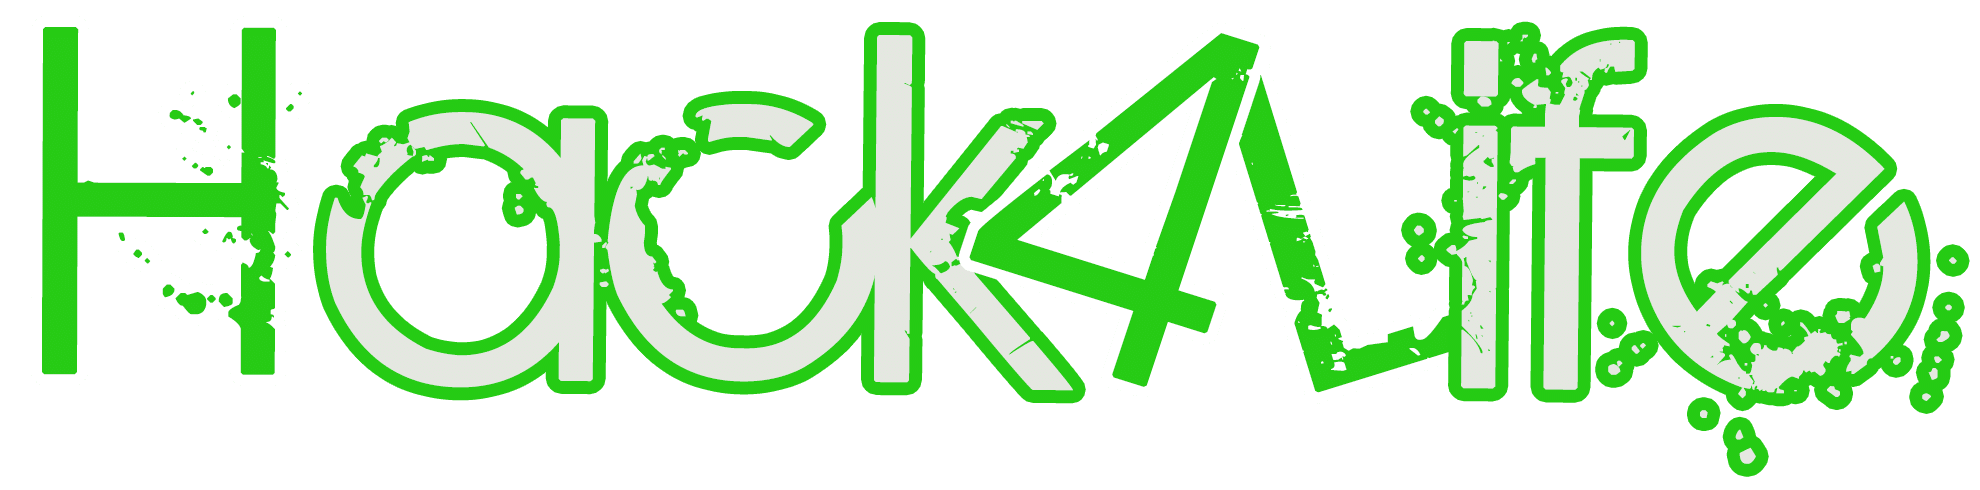 Hack4Life Logo Schriftzug